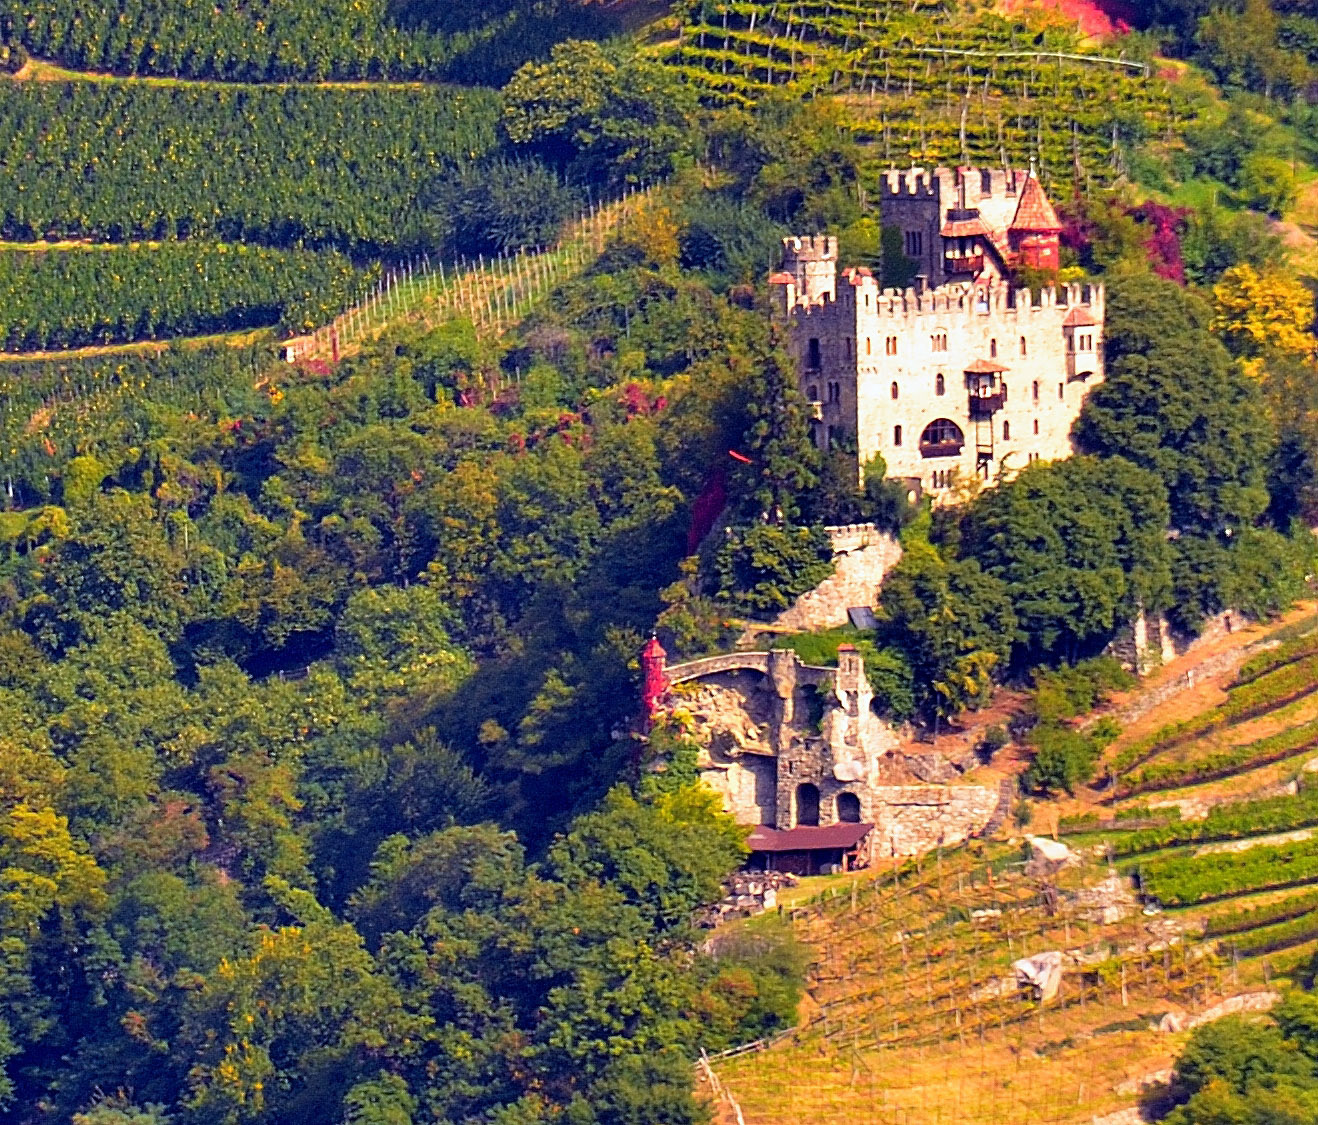 Auch auf der anderen Talseite befindet sich die Brunnenburg. Die Brunnenburg ist eine hochmittelalterliche Hangburg in Dorf Tirol bei Meran.